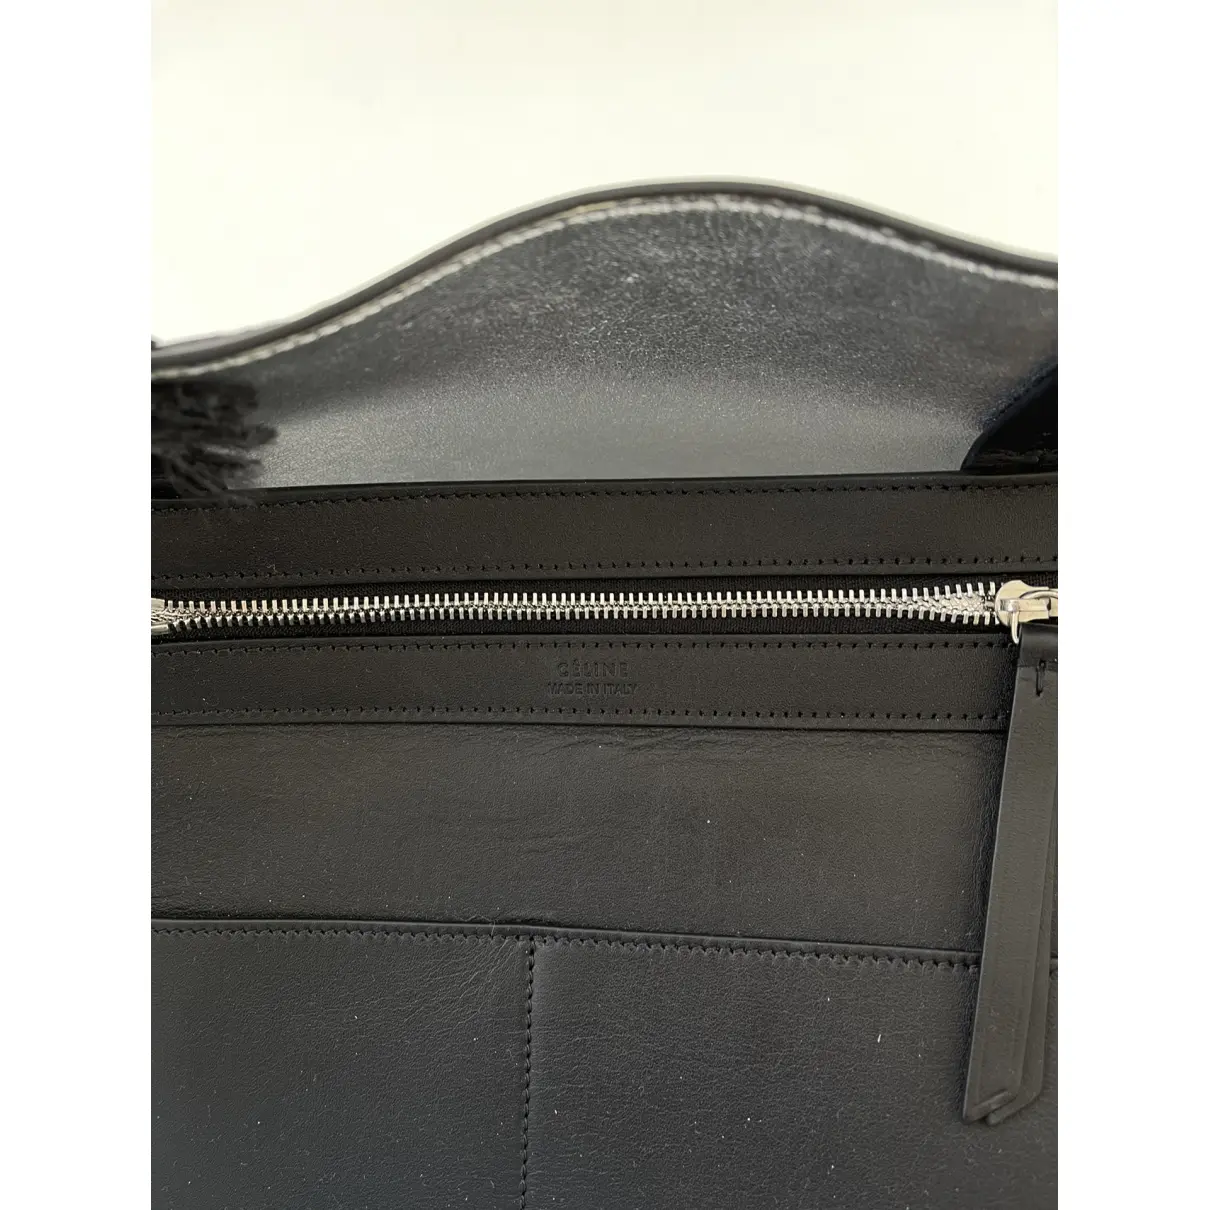 Cabas Phantom leather handbag Celine